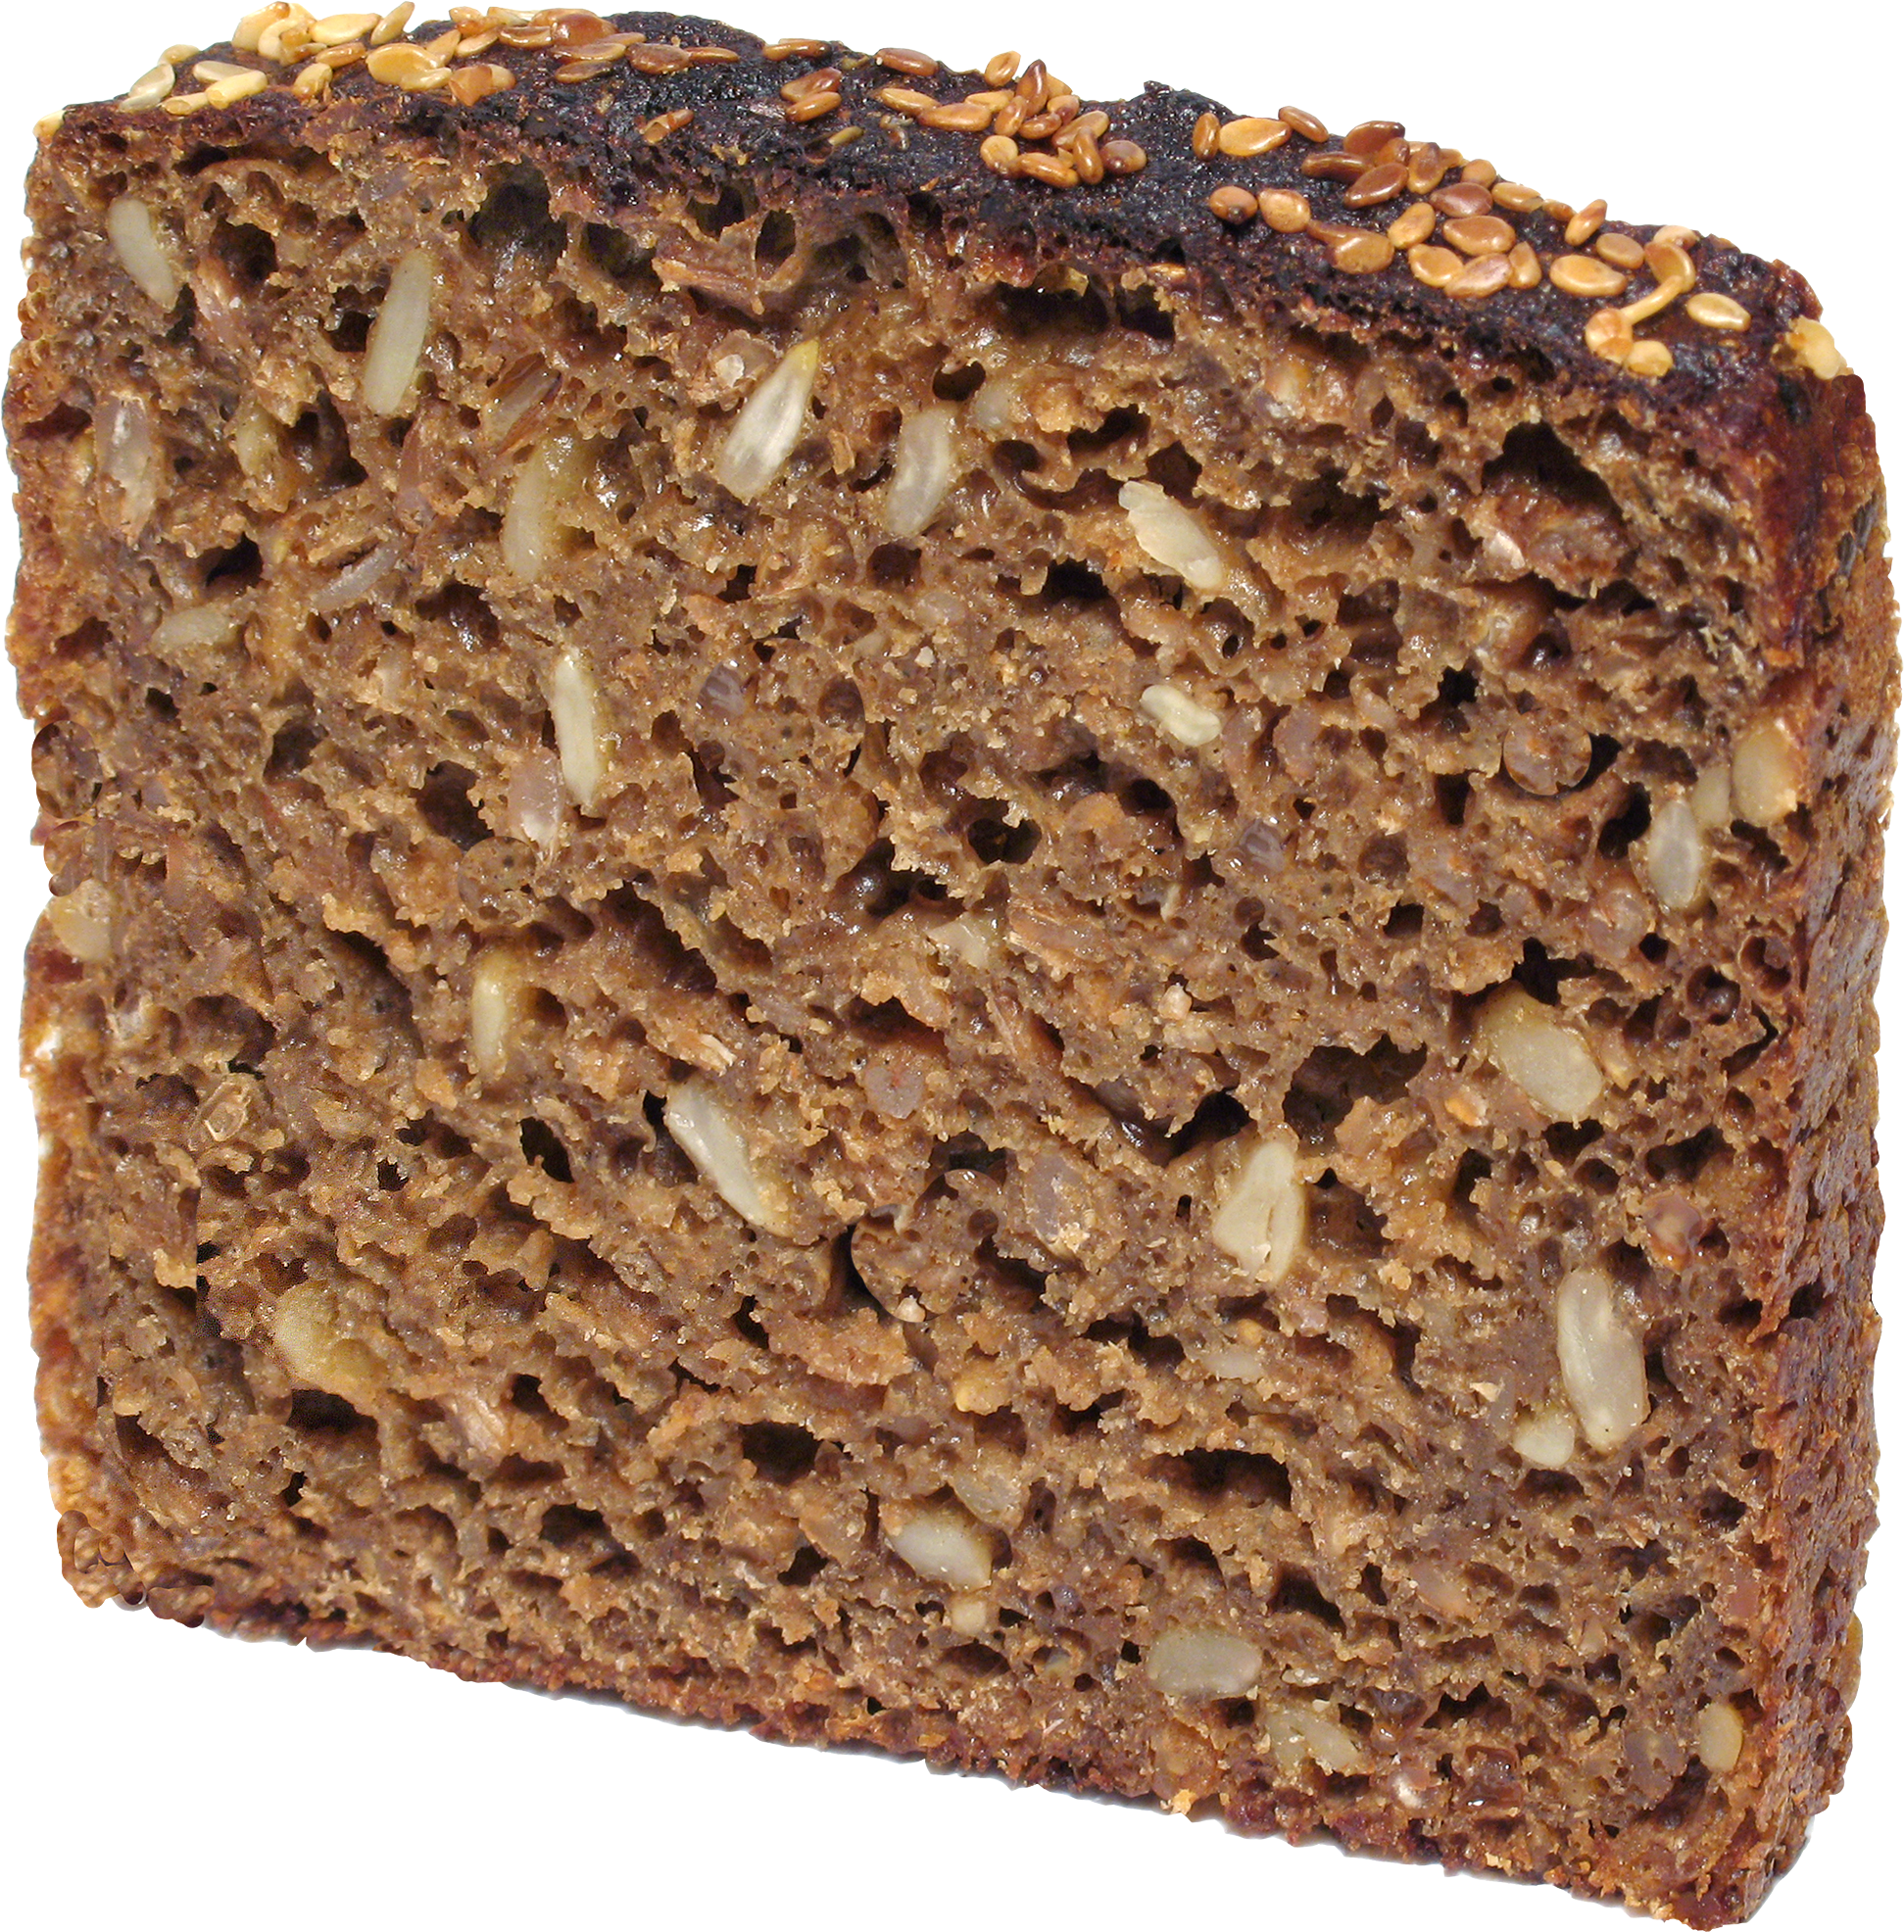 clipart bread brown bread